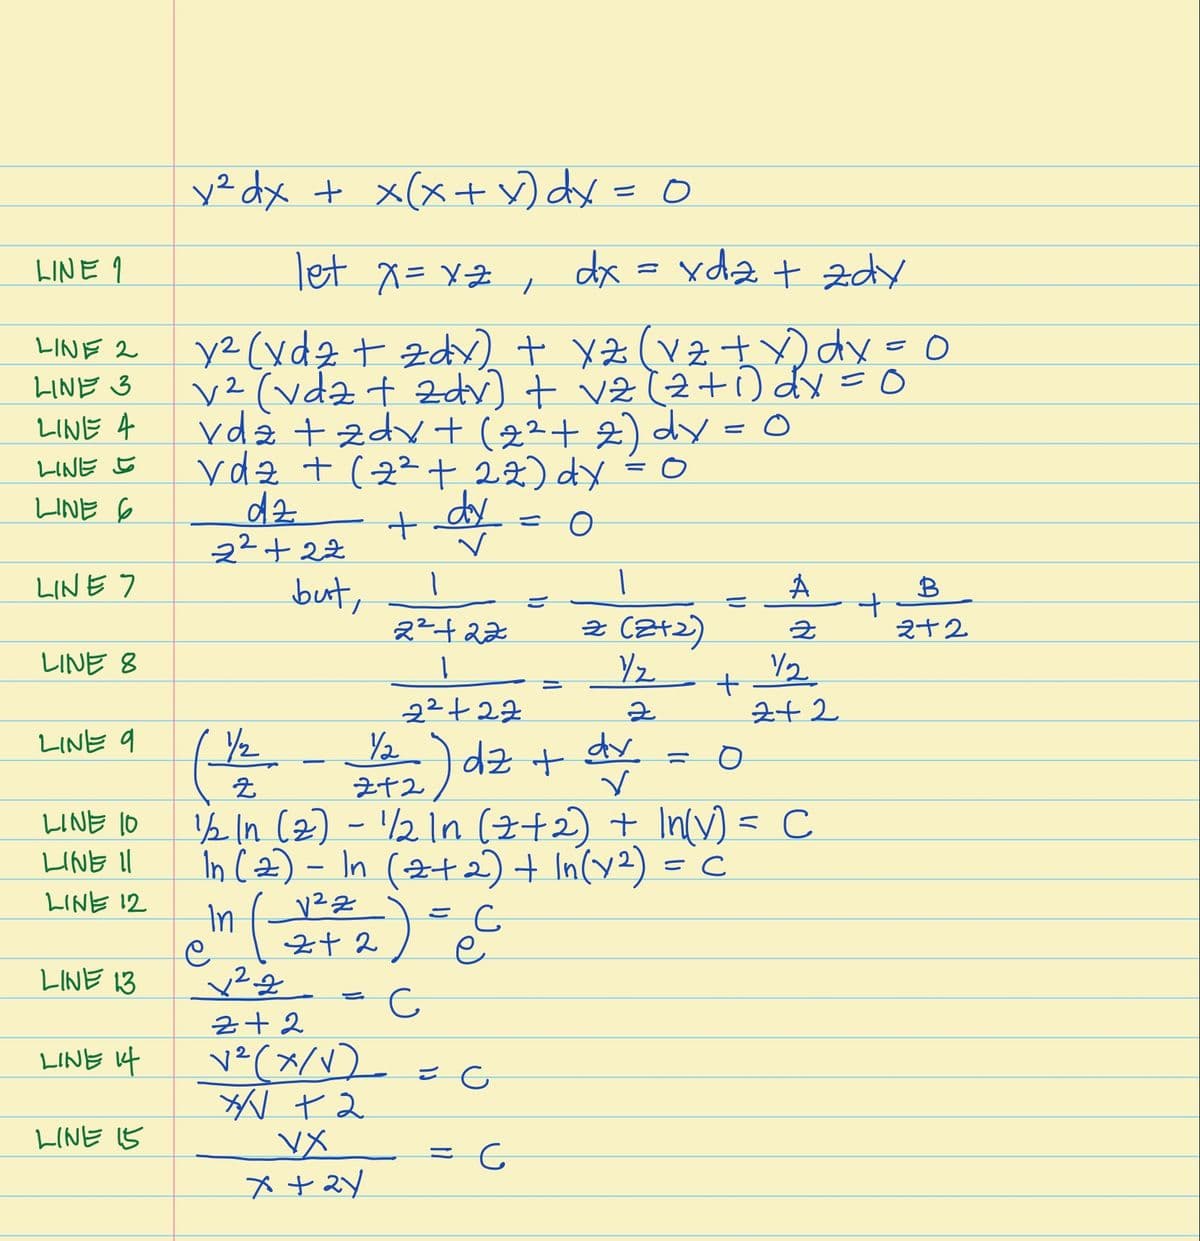 y² dx + x(x+ ) dx = 0
let x= xZ ,
dx = xdz t zdy
LINE 9
y2 (xdz t zd + ( tdx=
v²(vdz t 2dv) + vz (2+O dx =0
vda +zdv + (+2) dy = 0
ydz + (2²+ i2) dy - o
dz
22+22
LINE 2
LINE 3
LINE 4
LINE 5
LINE 6
dy
LINE 7
but,
A
B
2²+22
2 (2+2)
之十2
LINE 8
/2
22+22
Y2
Z+2) dz +
½ In (2) - /2In (z+2) + In(v) = C
În Cz) – In (2+2) + In(y2) =
242
LINE 9
dy
LINE 10
LINE Il
LINE 12
In
LINE 13
z+2
LINE f
v²(x/V)_
LINE 5
VX
